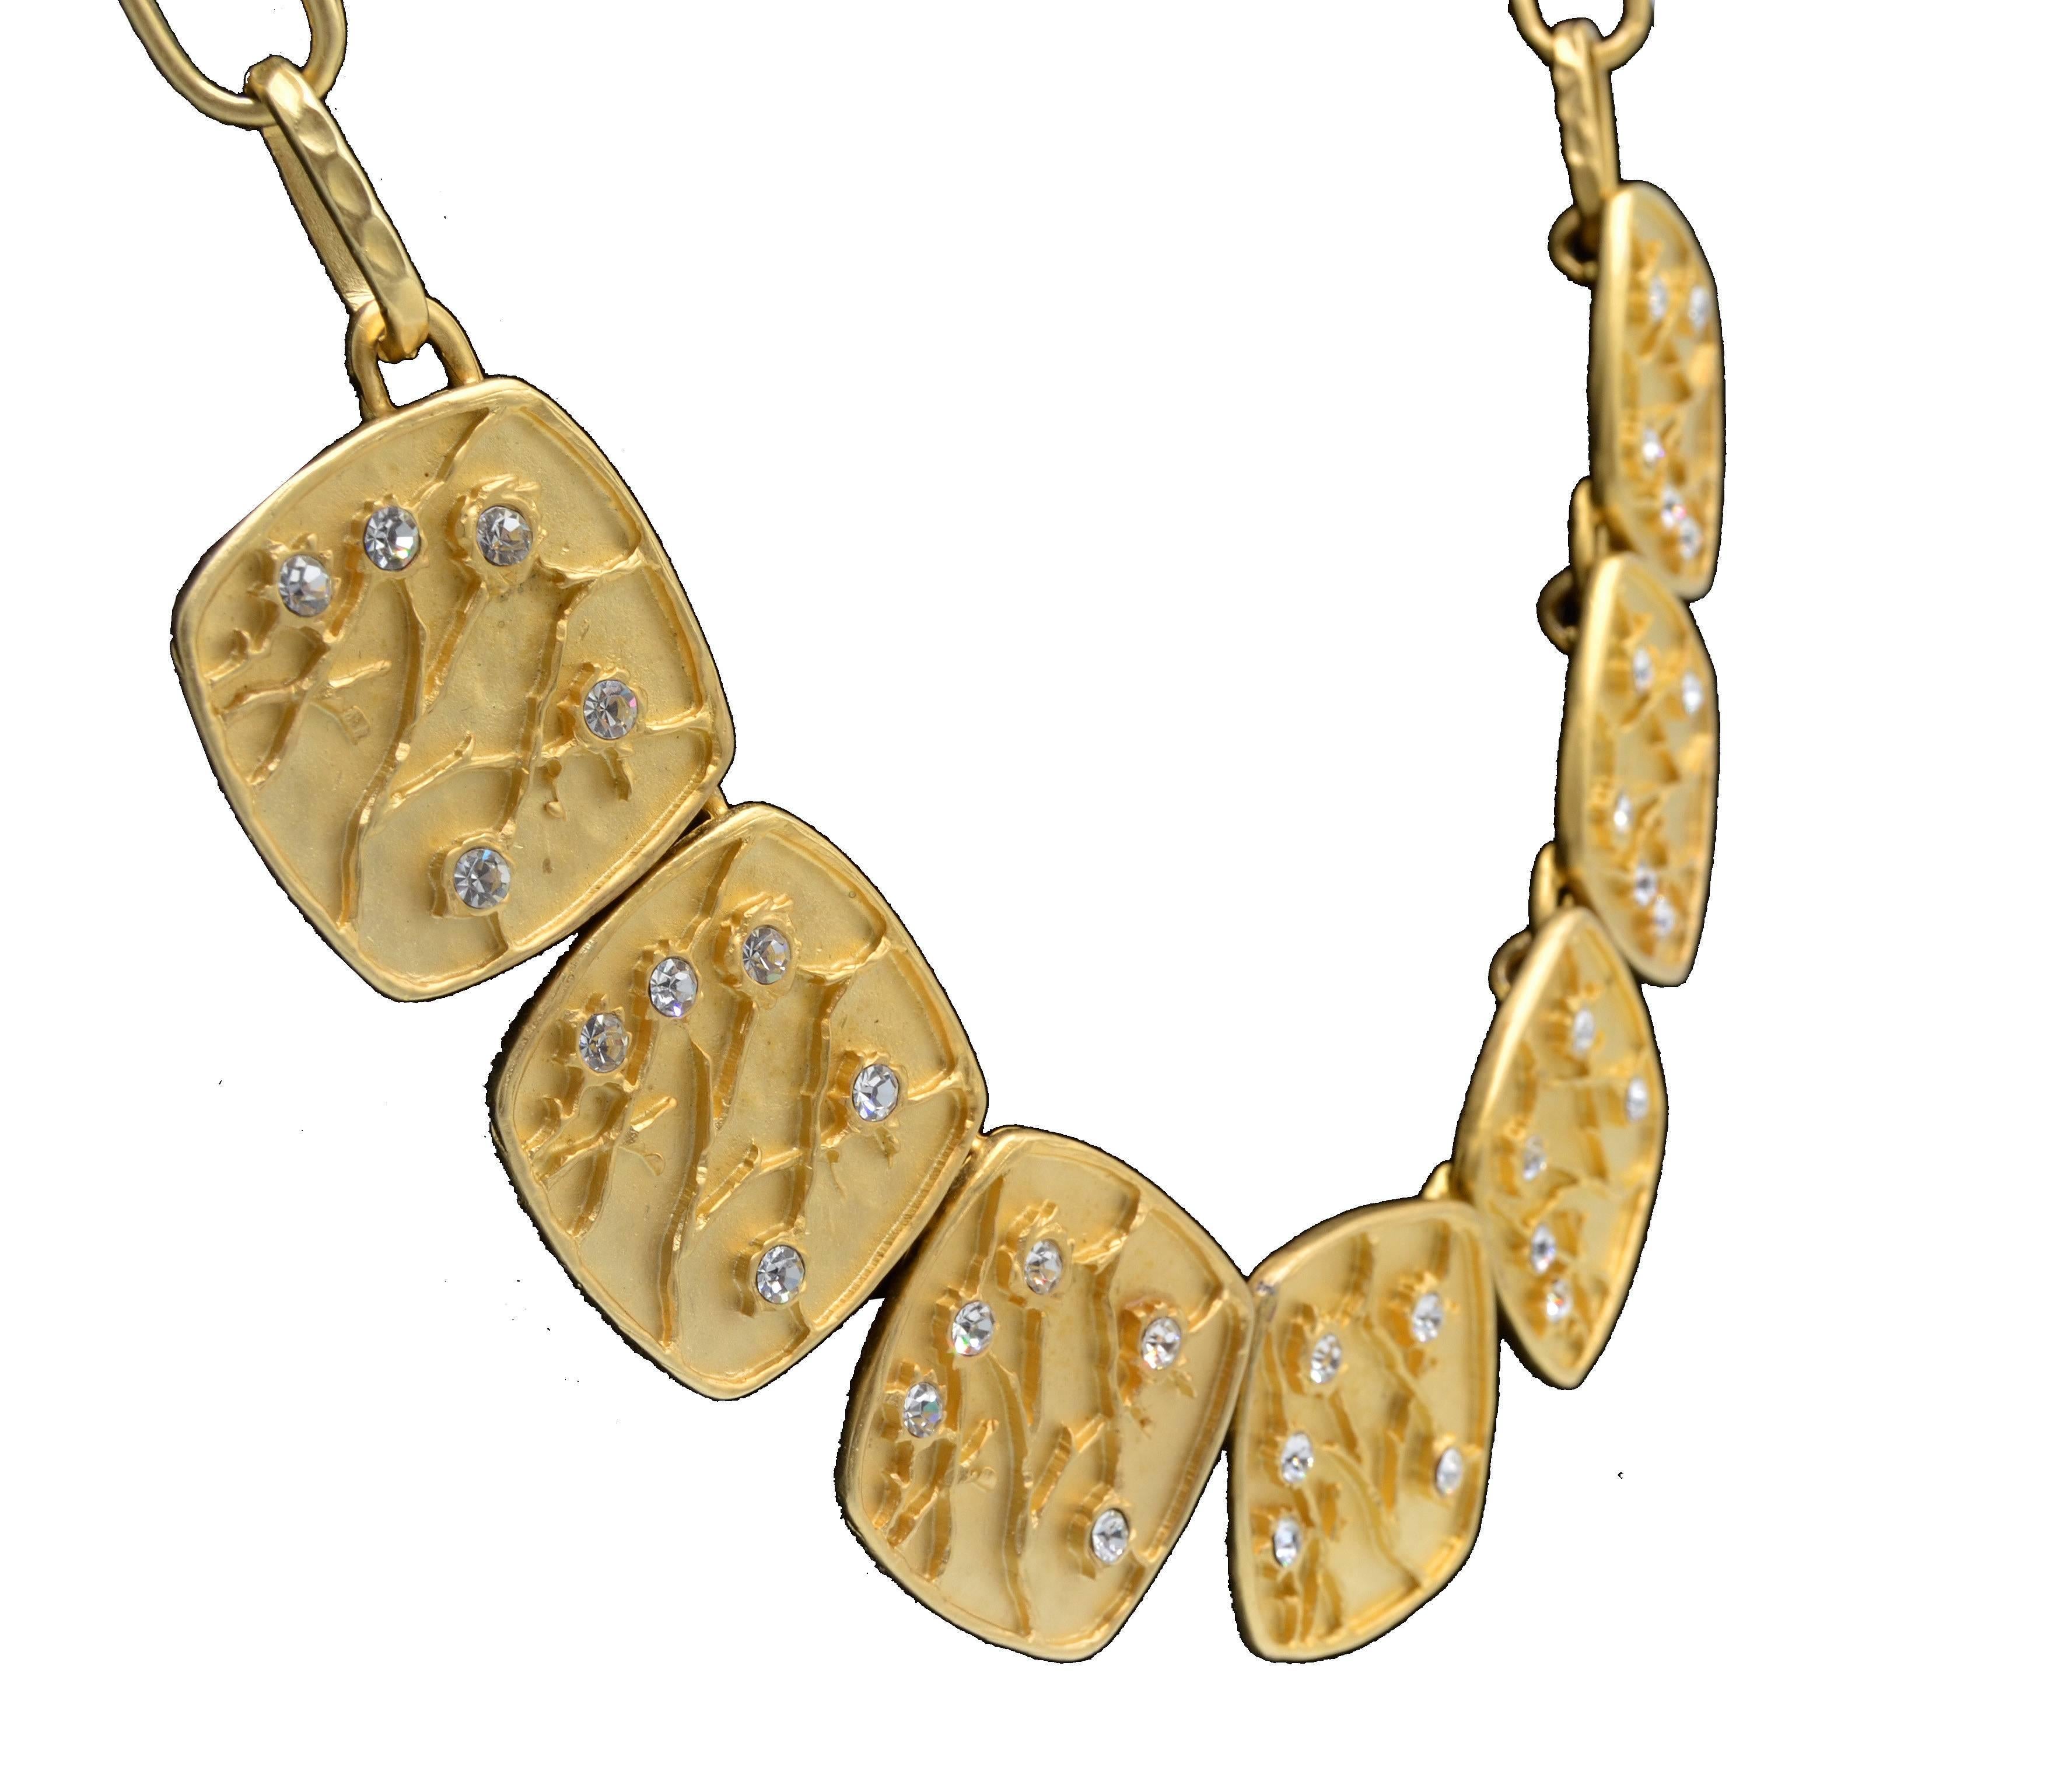 Kenneth Lane Gold getaucht Vintage-Halskette mit passenden Clip auf Ohrringe.
Unter jedem Ornament steht: Kenneth Lane, hergestellt in den USA.